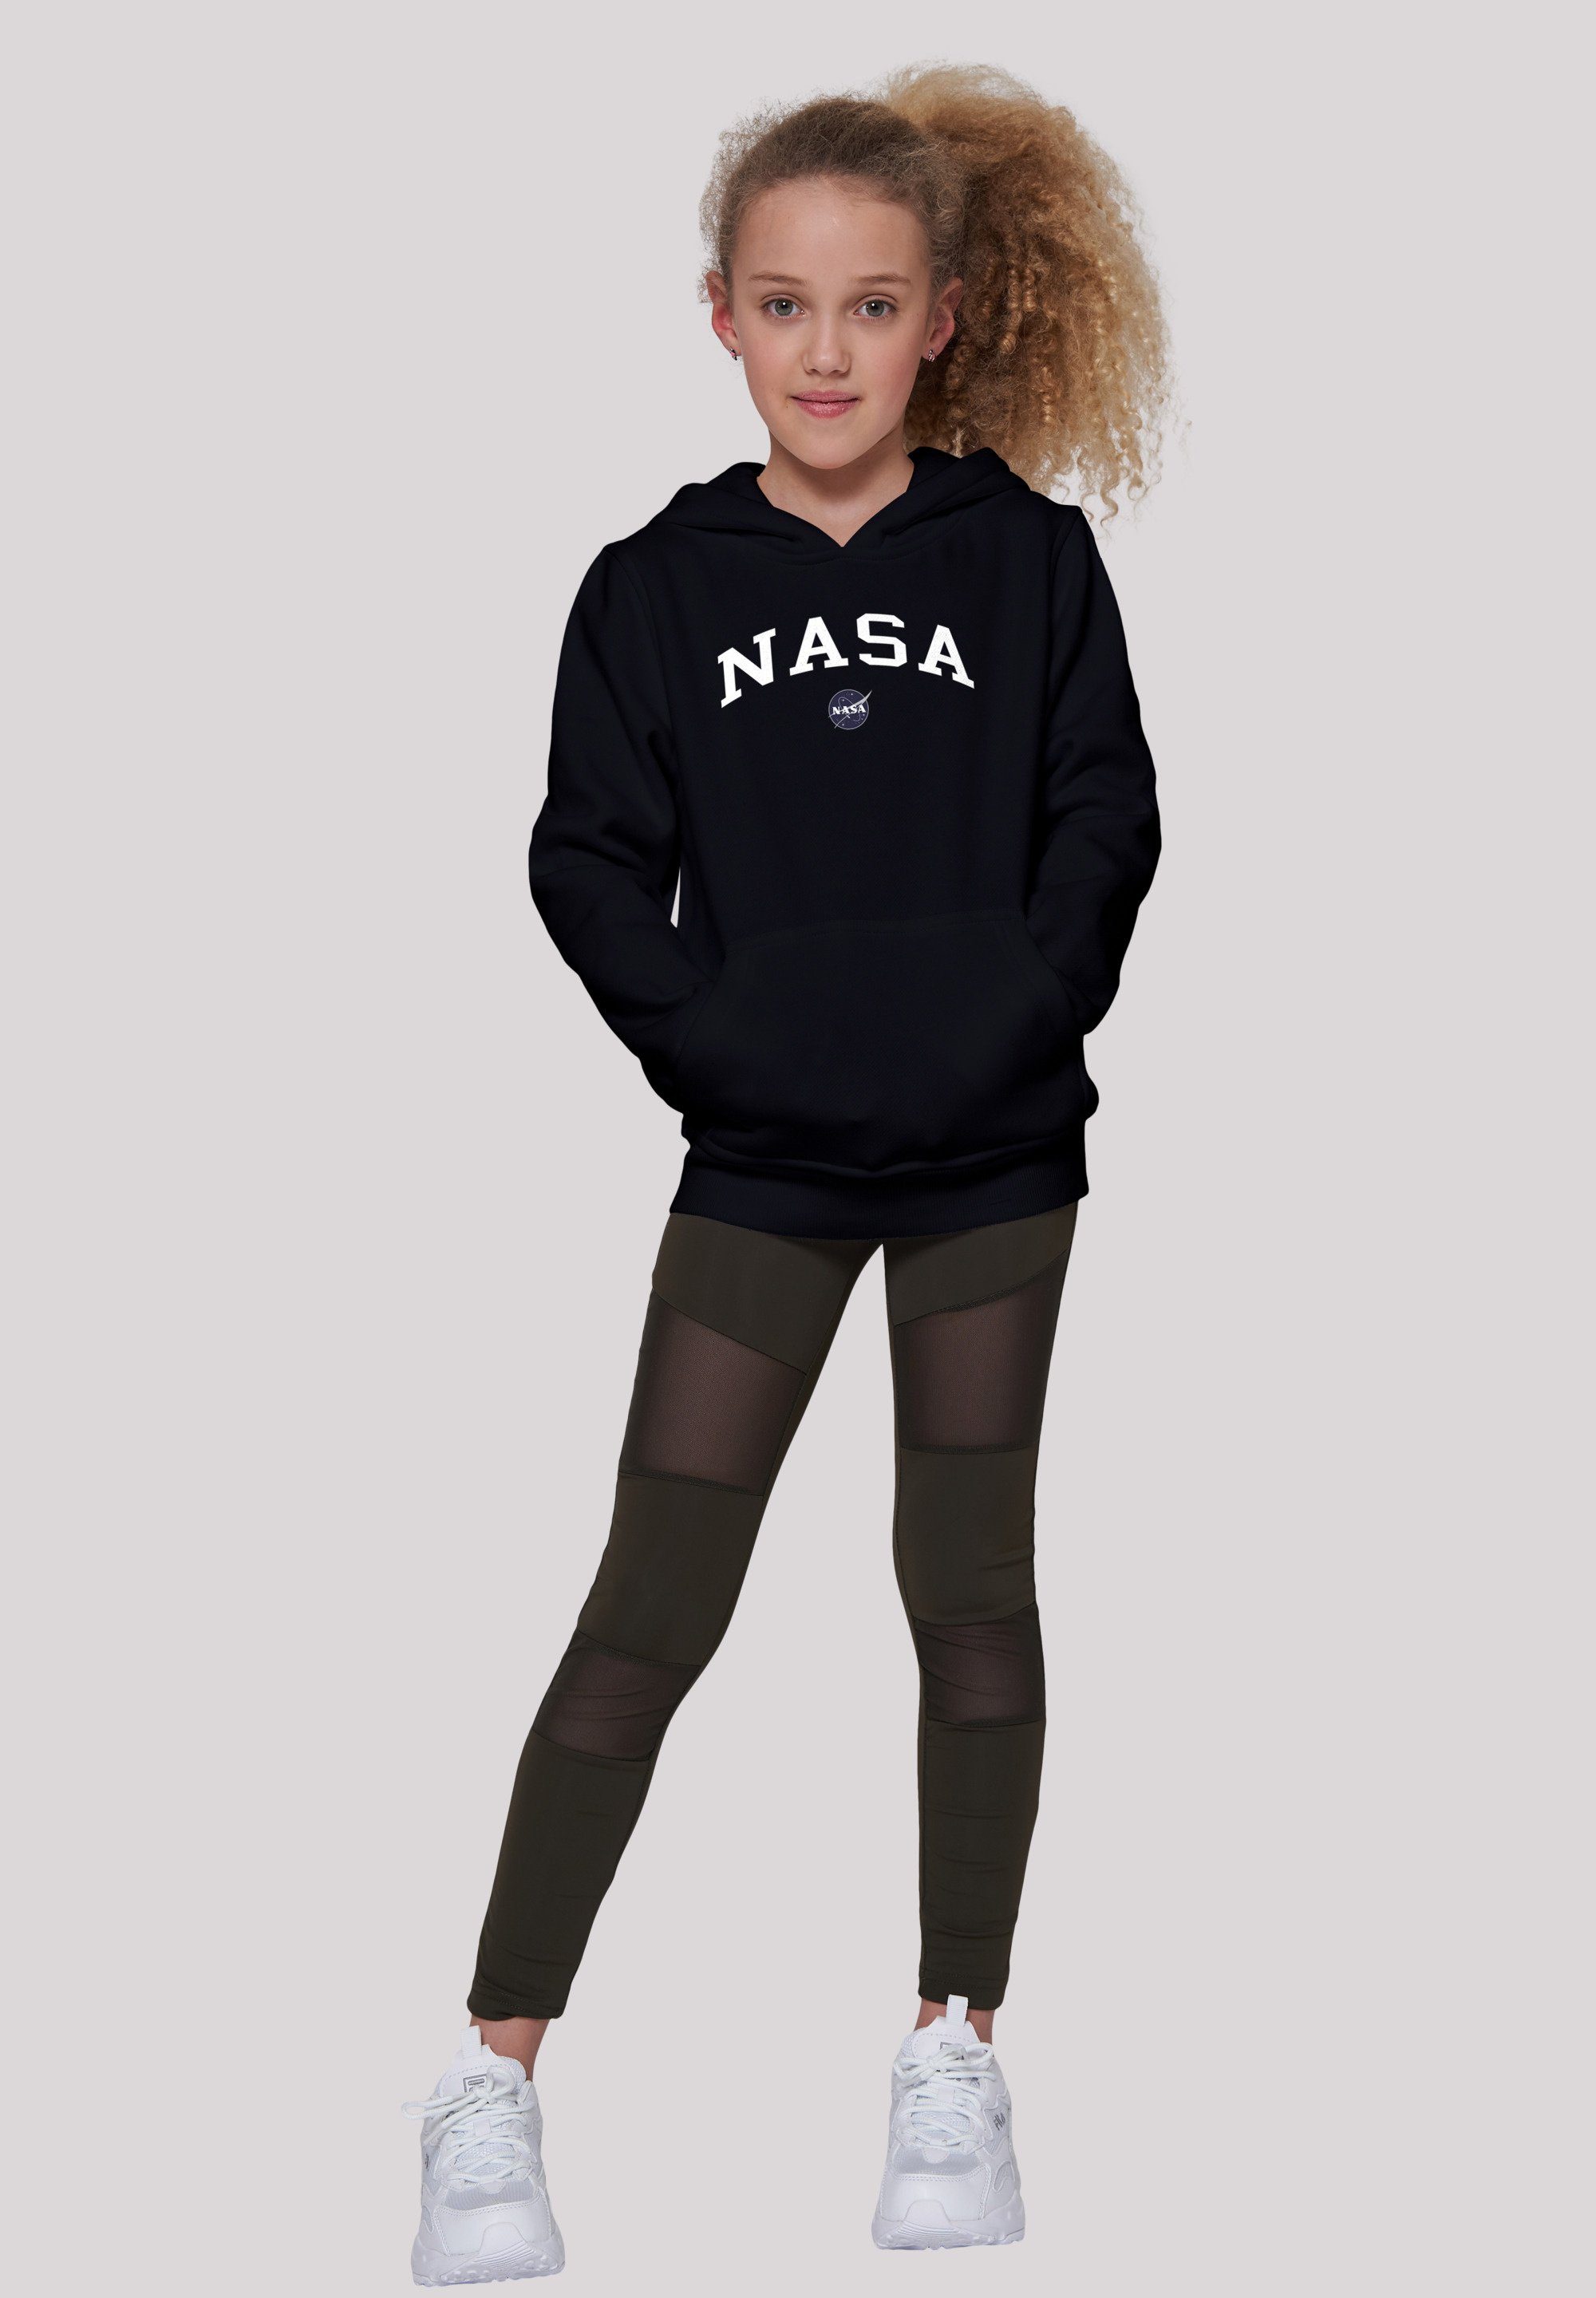 Logo F4NT4STIC Unisex NASA Collegiate Kinder,Premium Sweatshirt Merch,Jungen,Mädchen,Bedruckt